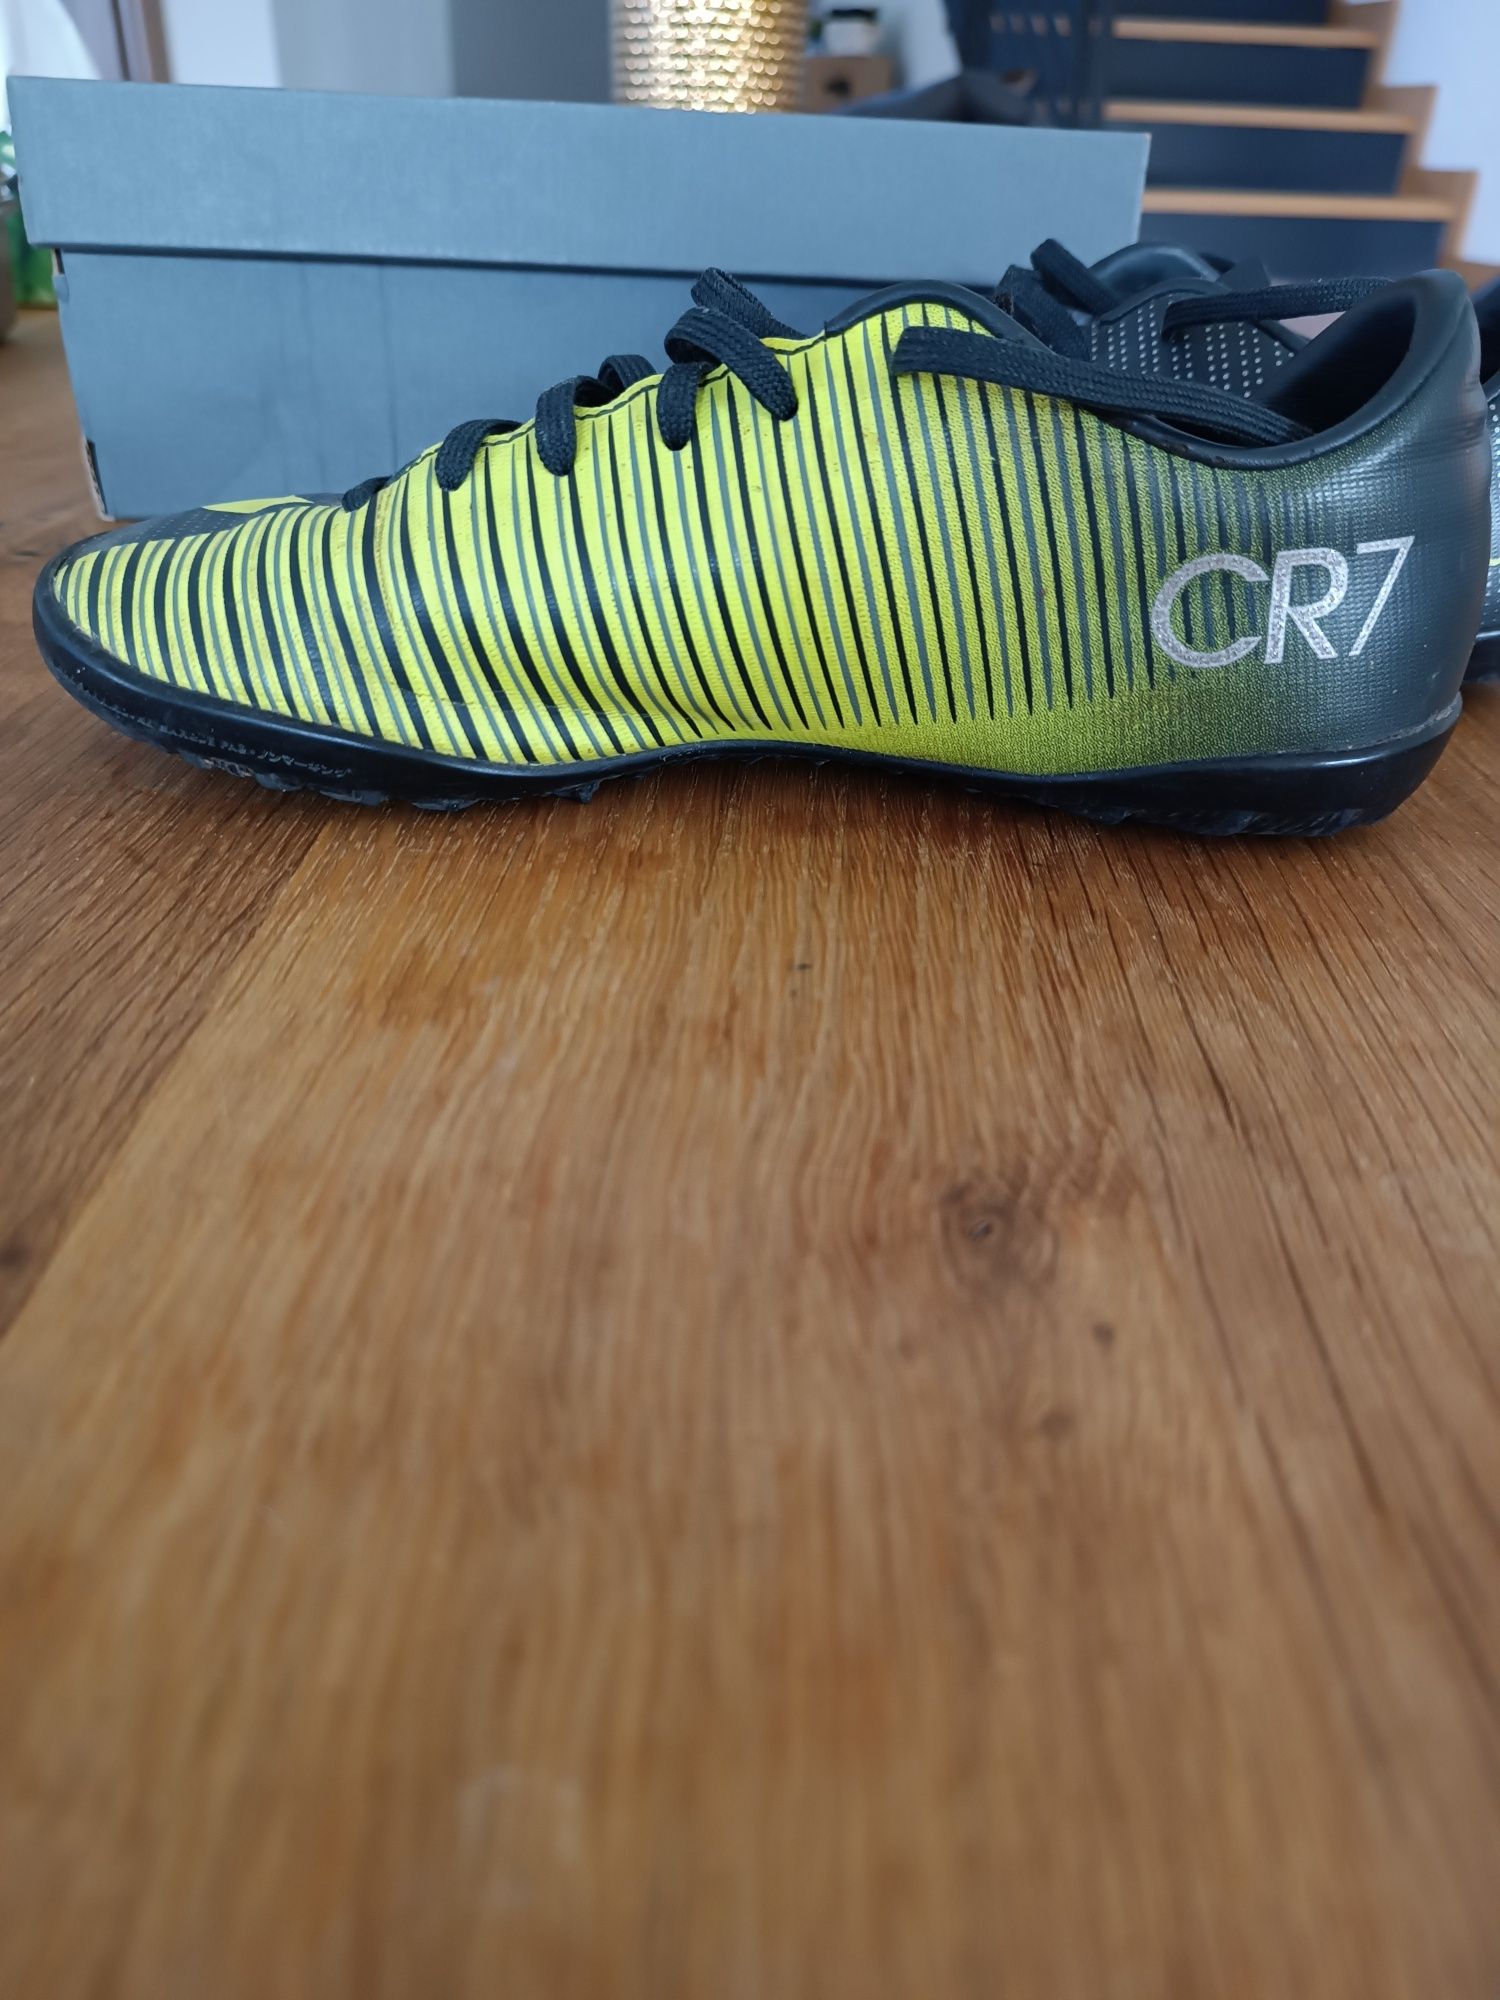 Nike Mercurial CR7 marimea 35